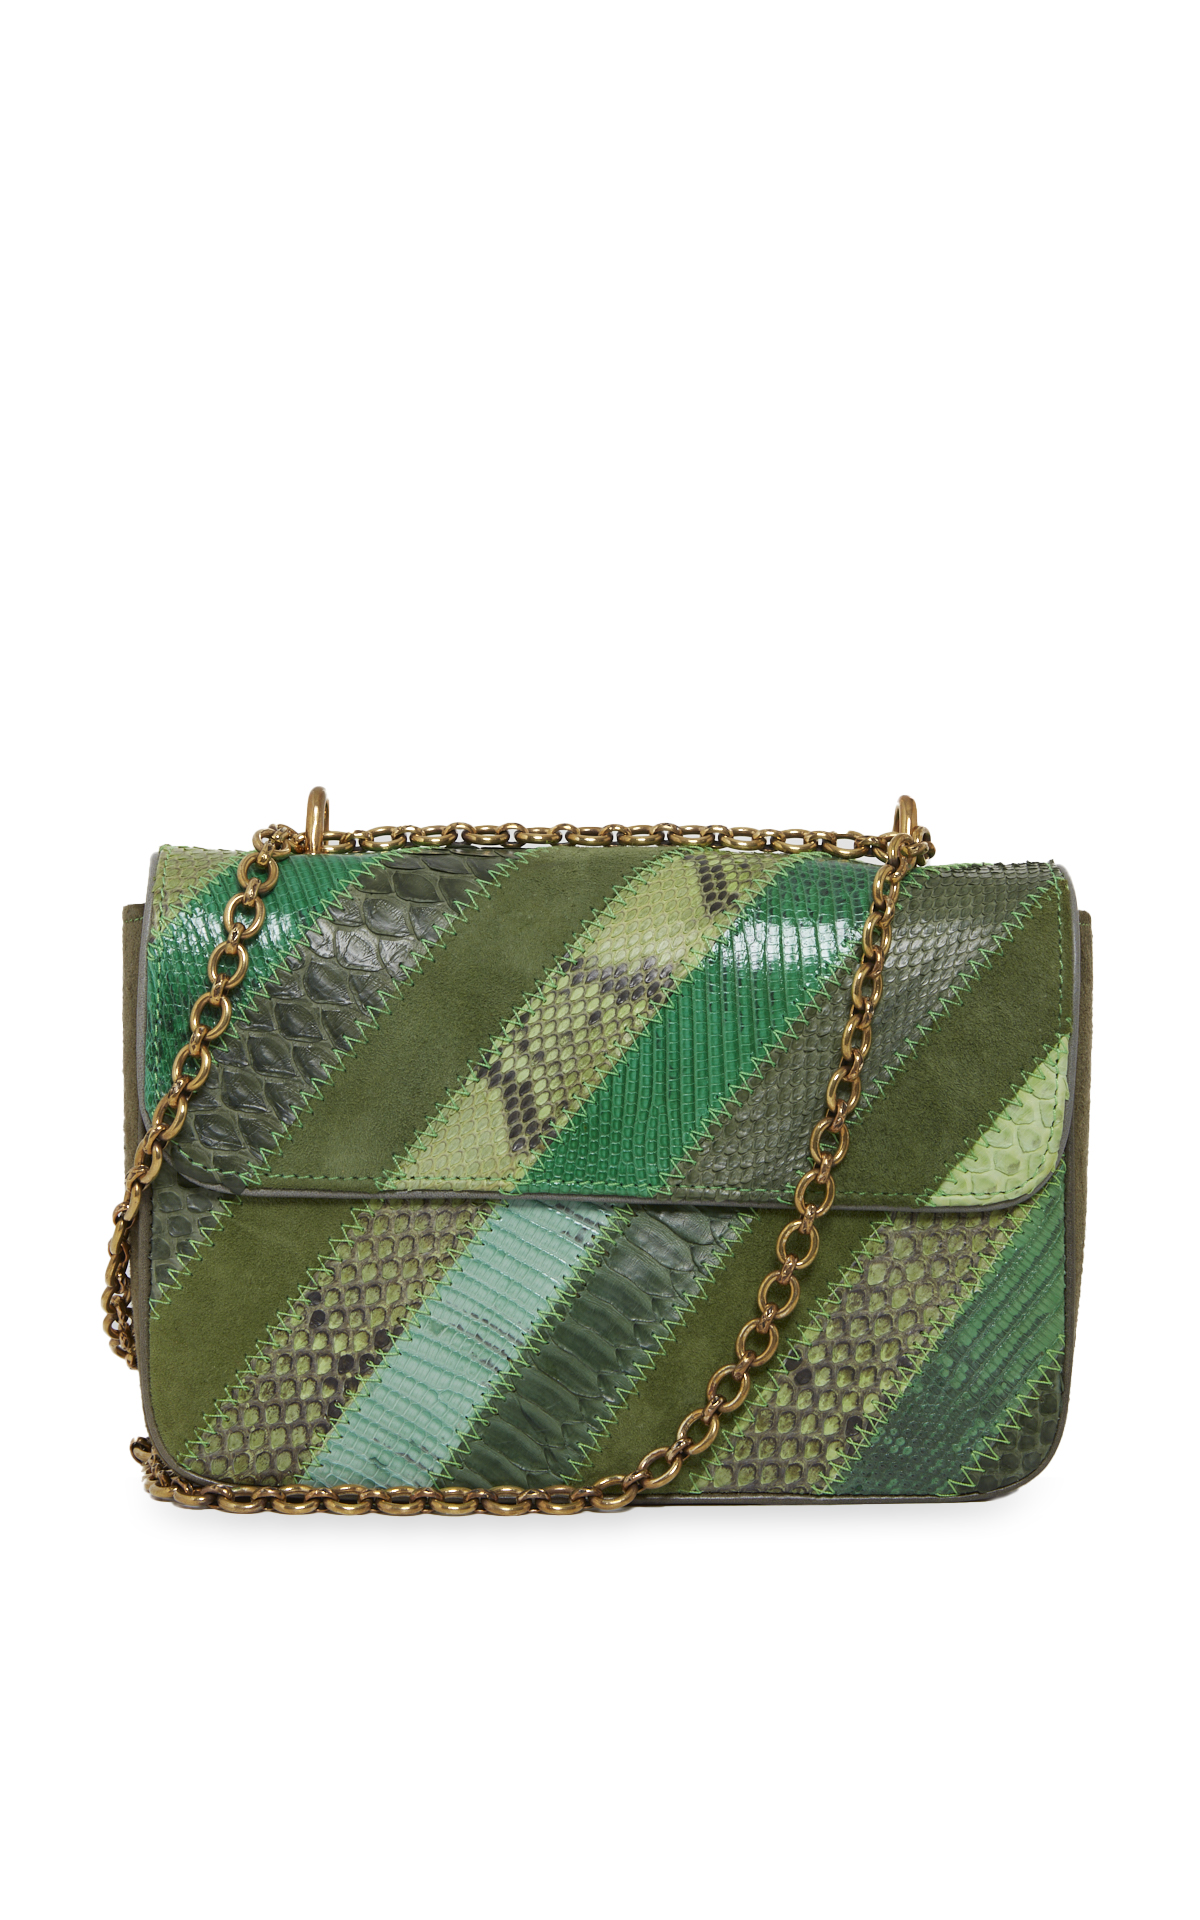 Ava green handbag*